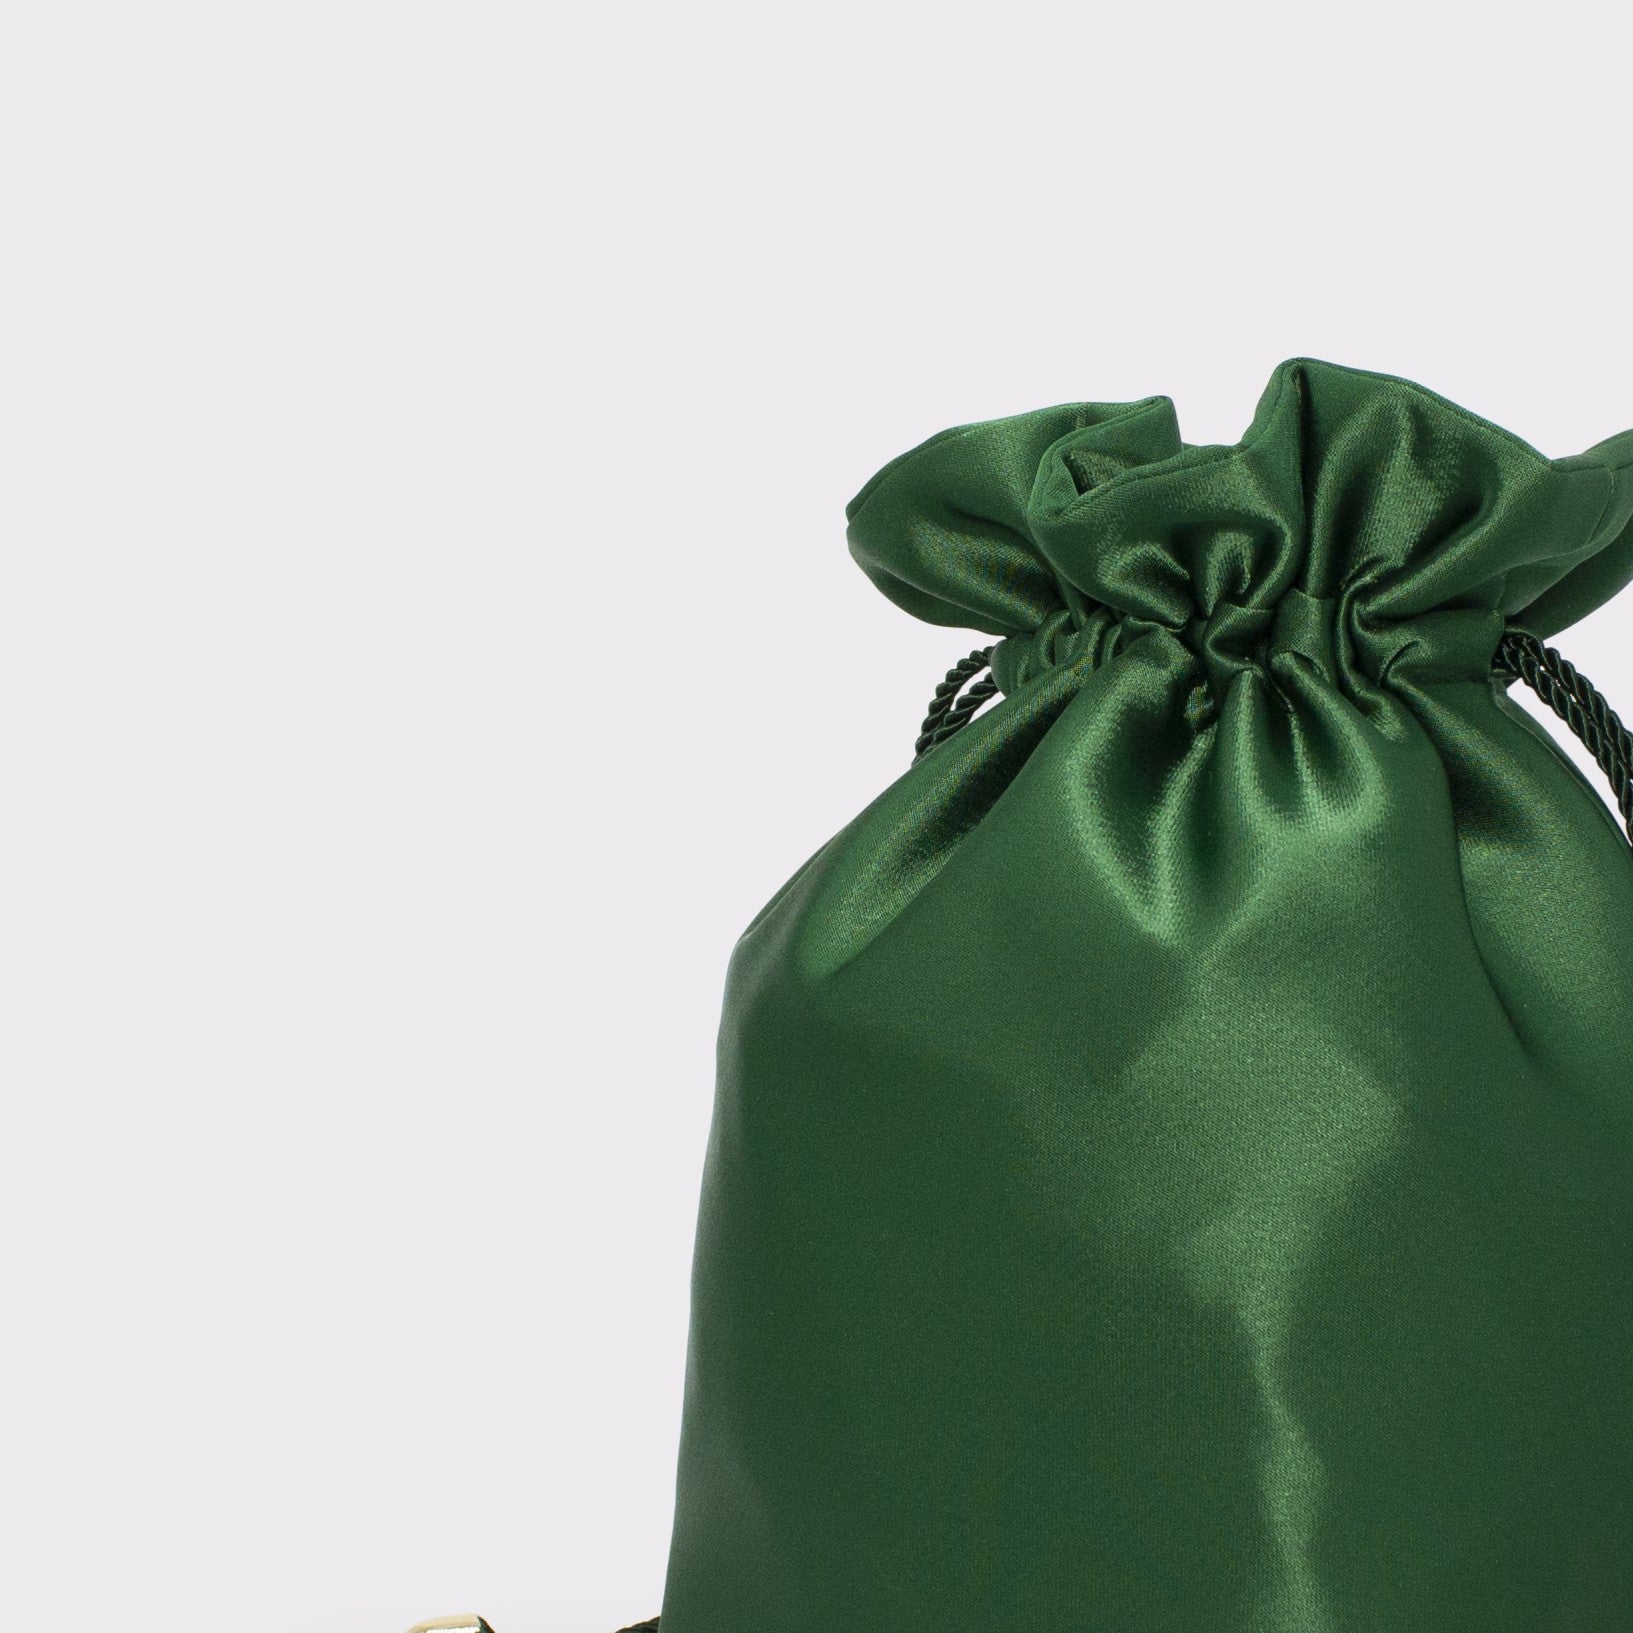 Giulia flat bag in colorazione verde giada